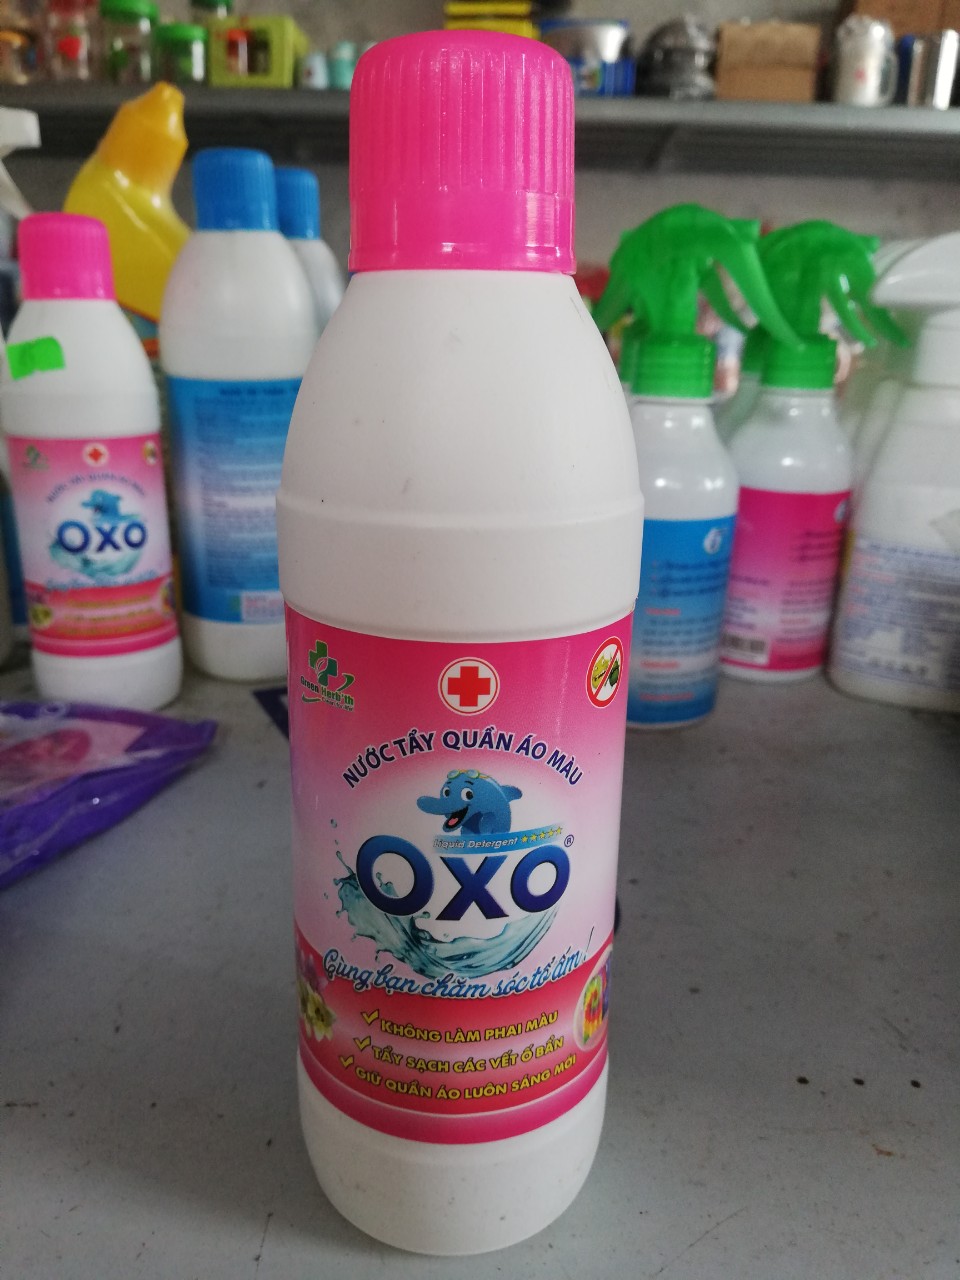 Nước tẩy quần áo màu OXO 300ml